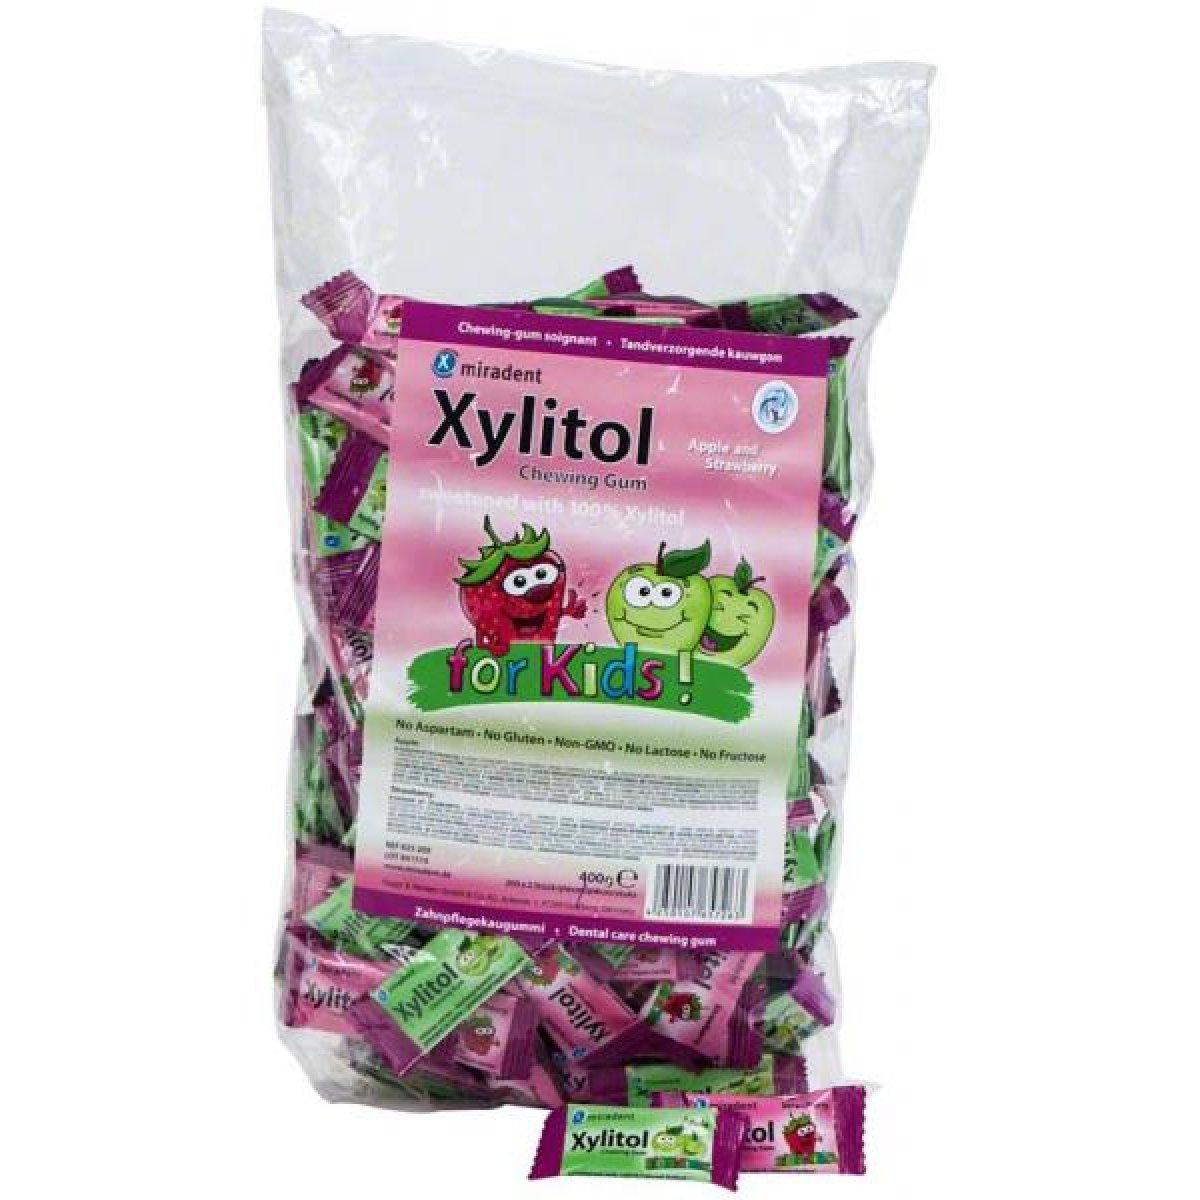 Xylitol Chewing Gum – Hager & Werken